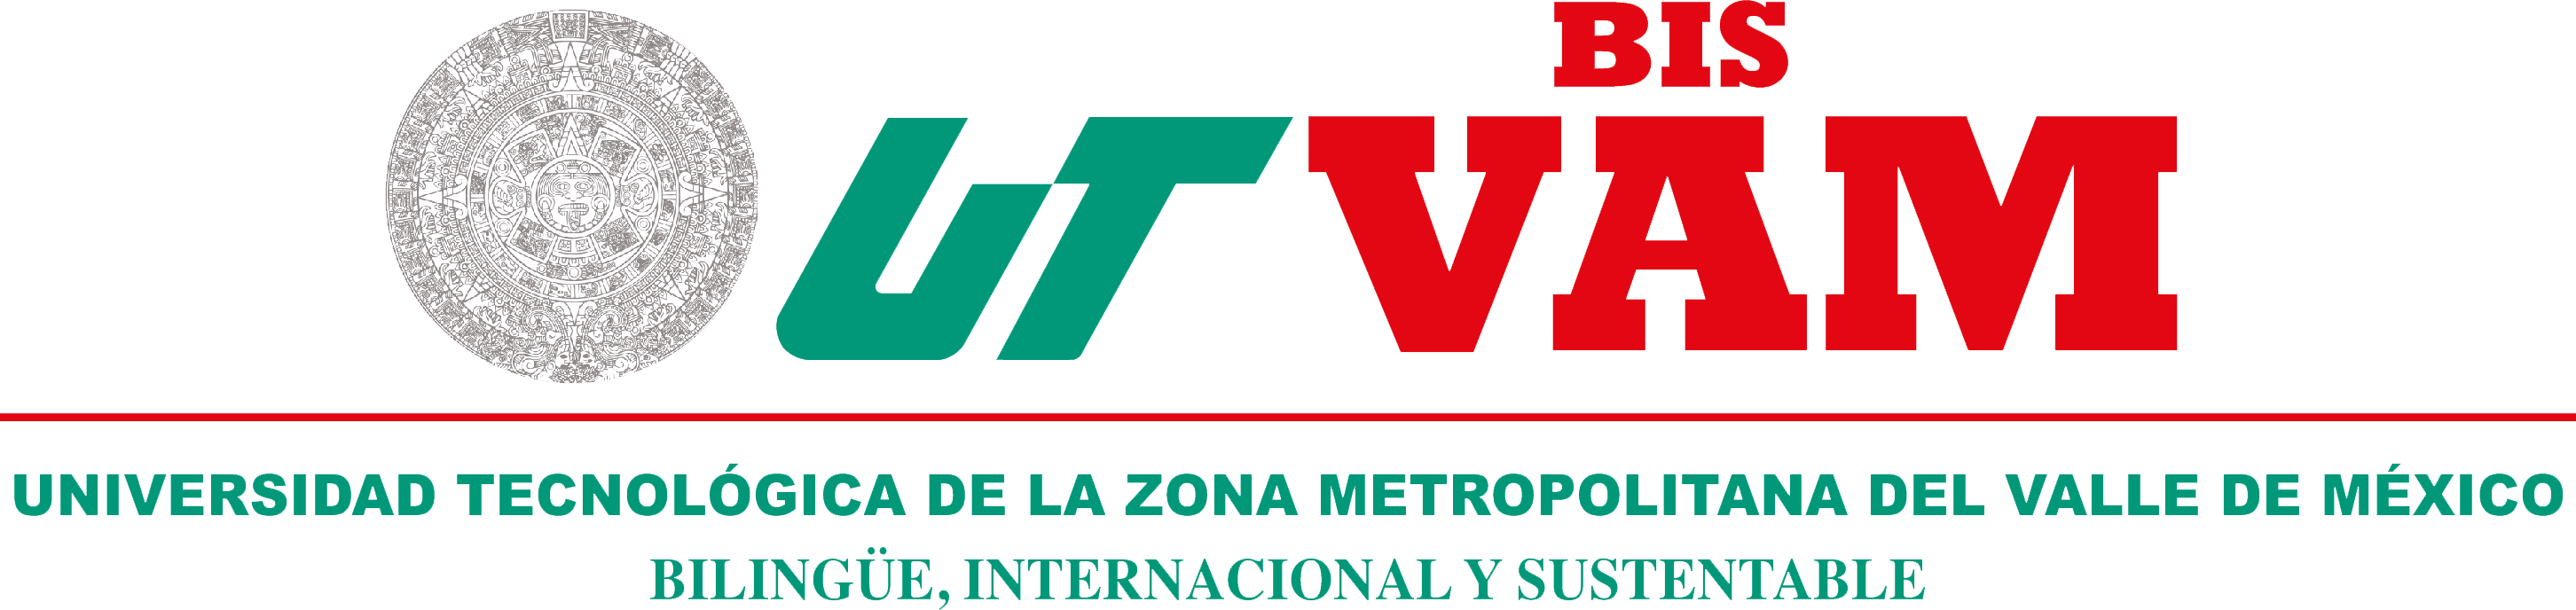 Universidad Tecnológica de la Zona Metropolitana del Valle de México